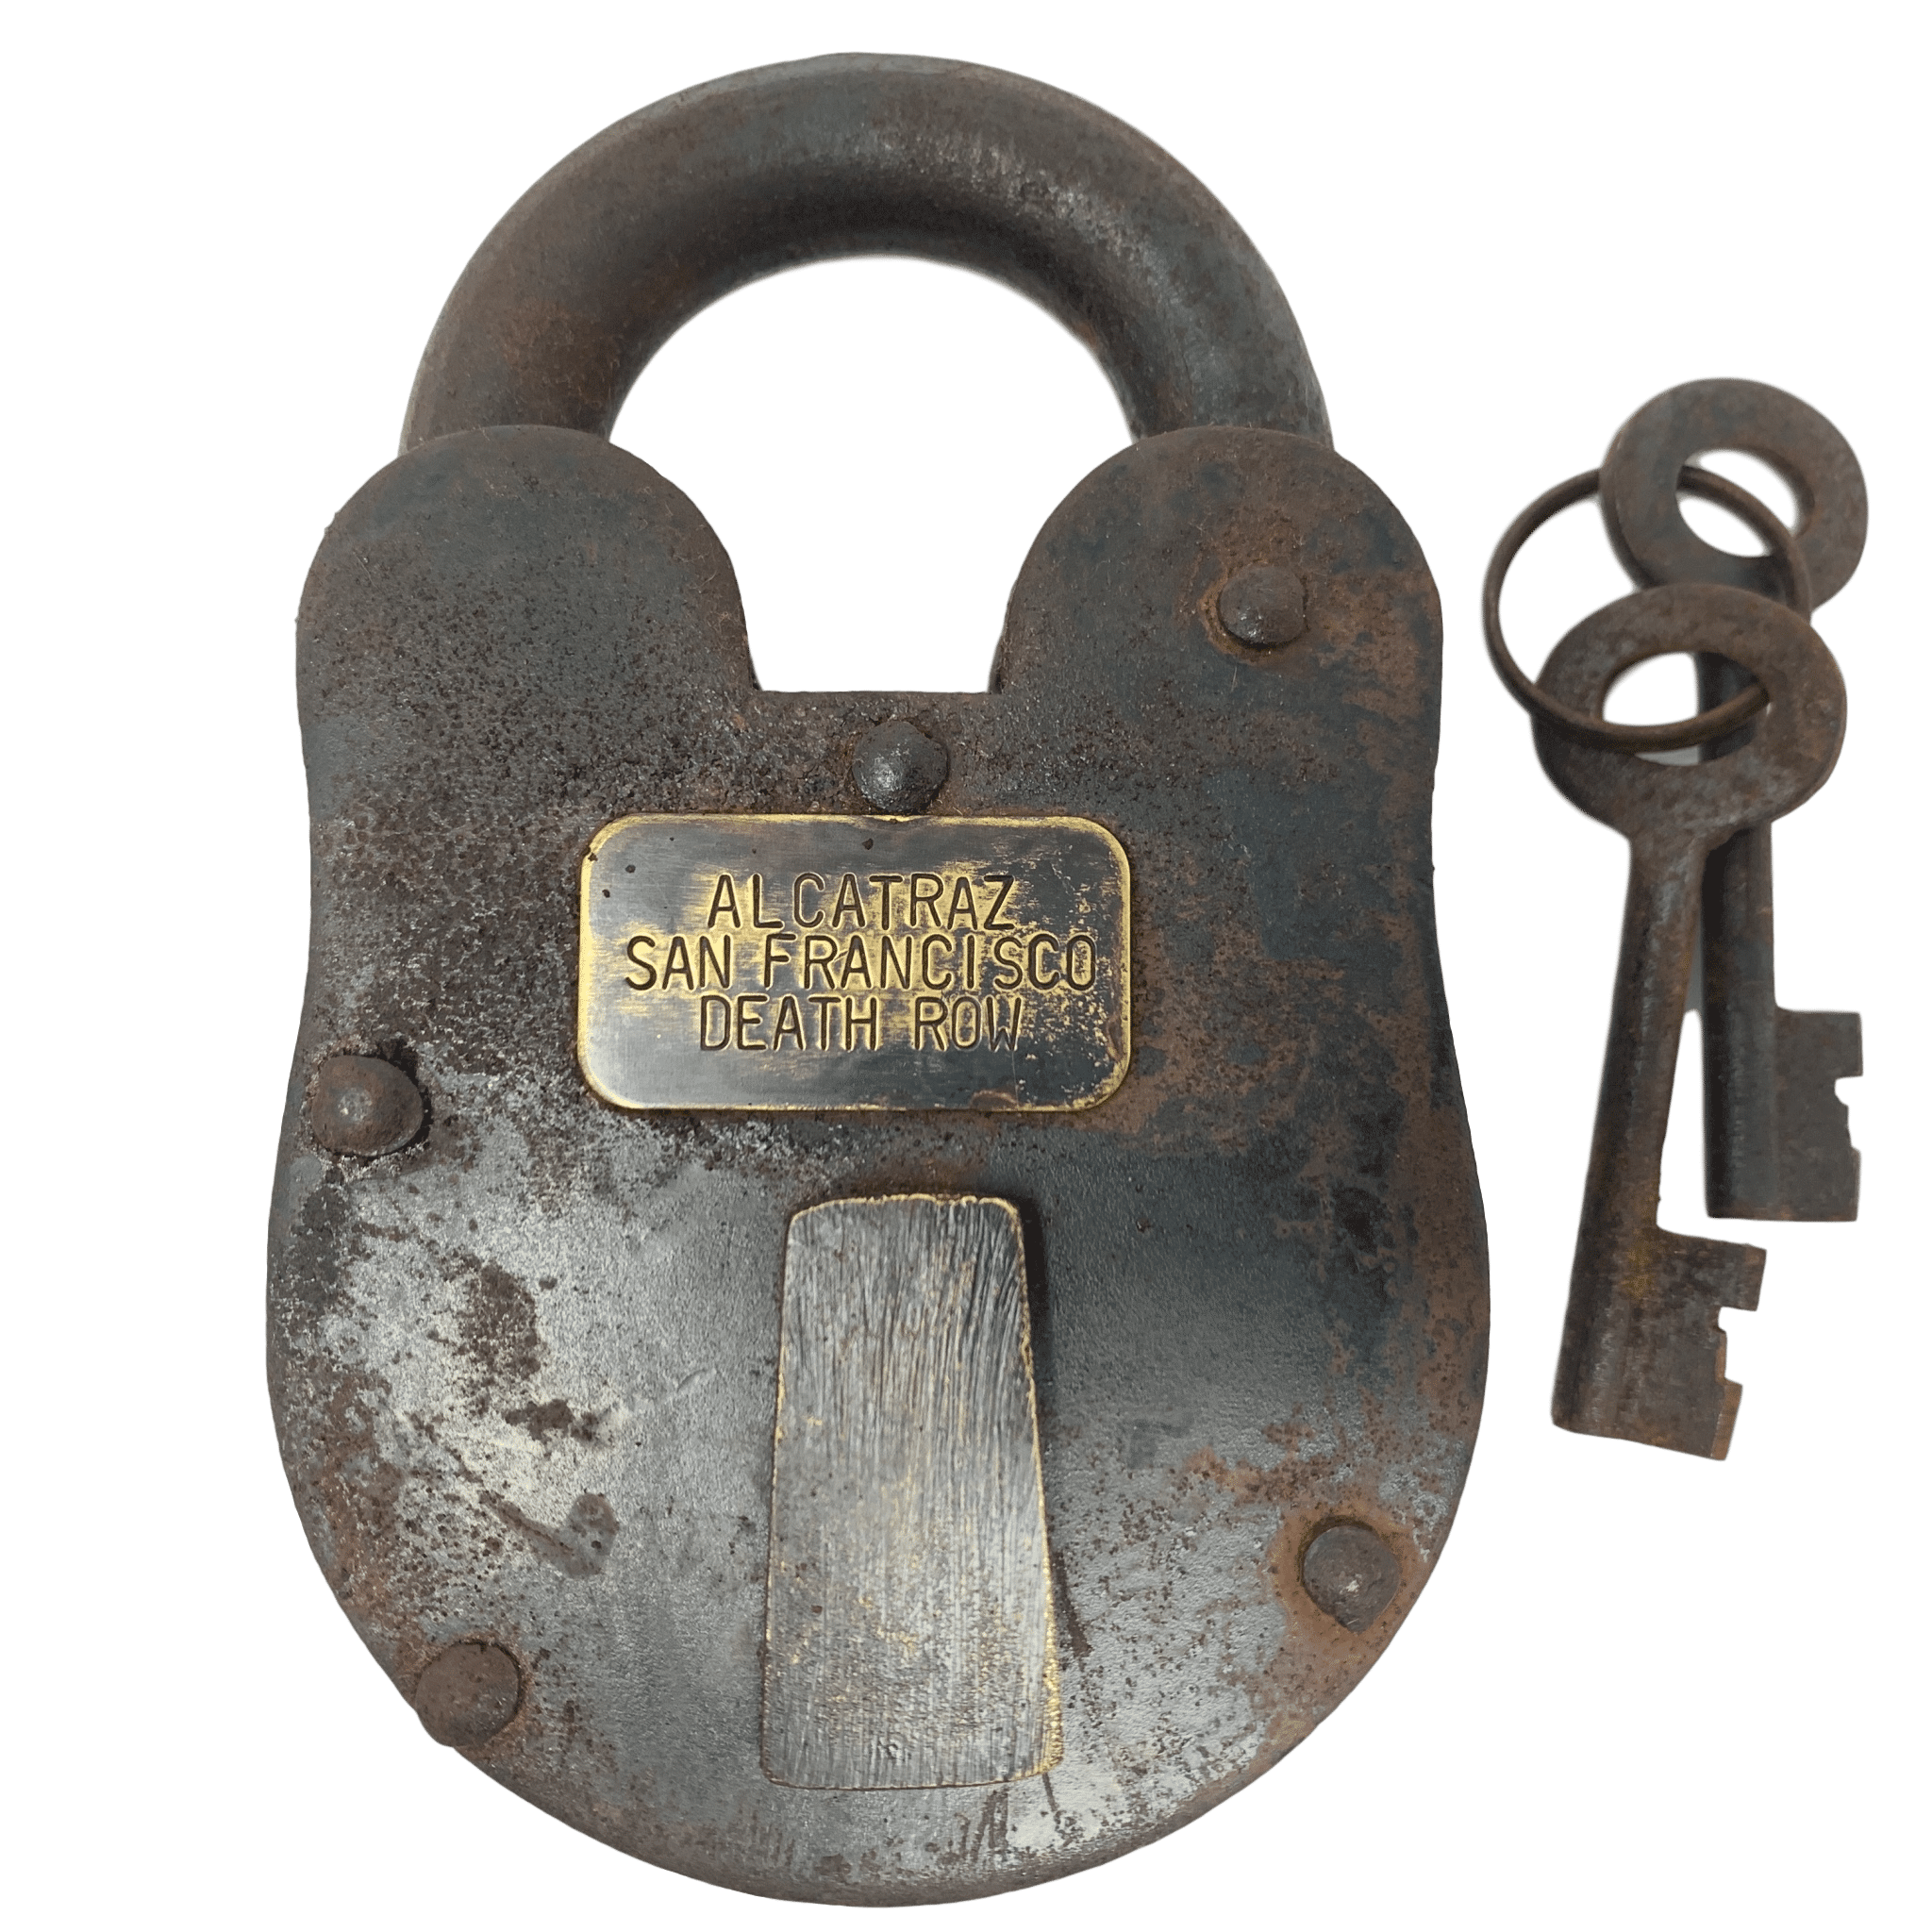 Vintage reproduction cast iron prison/ jail keys